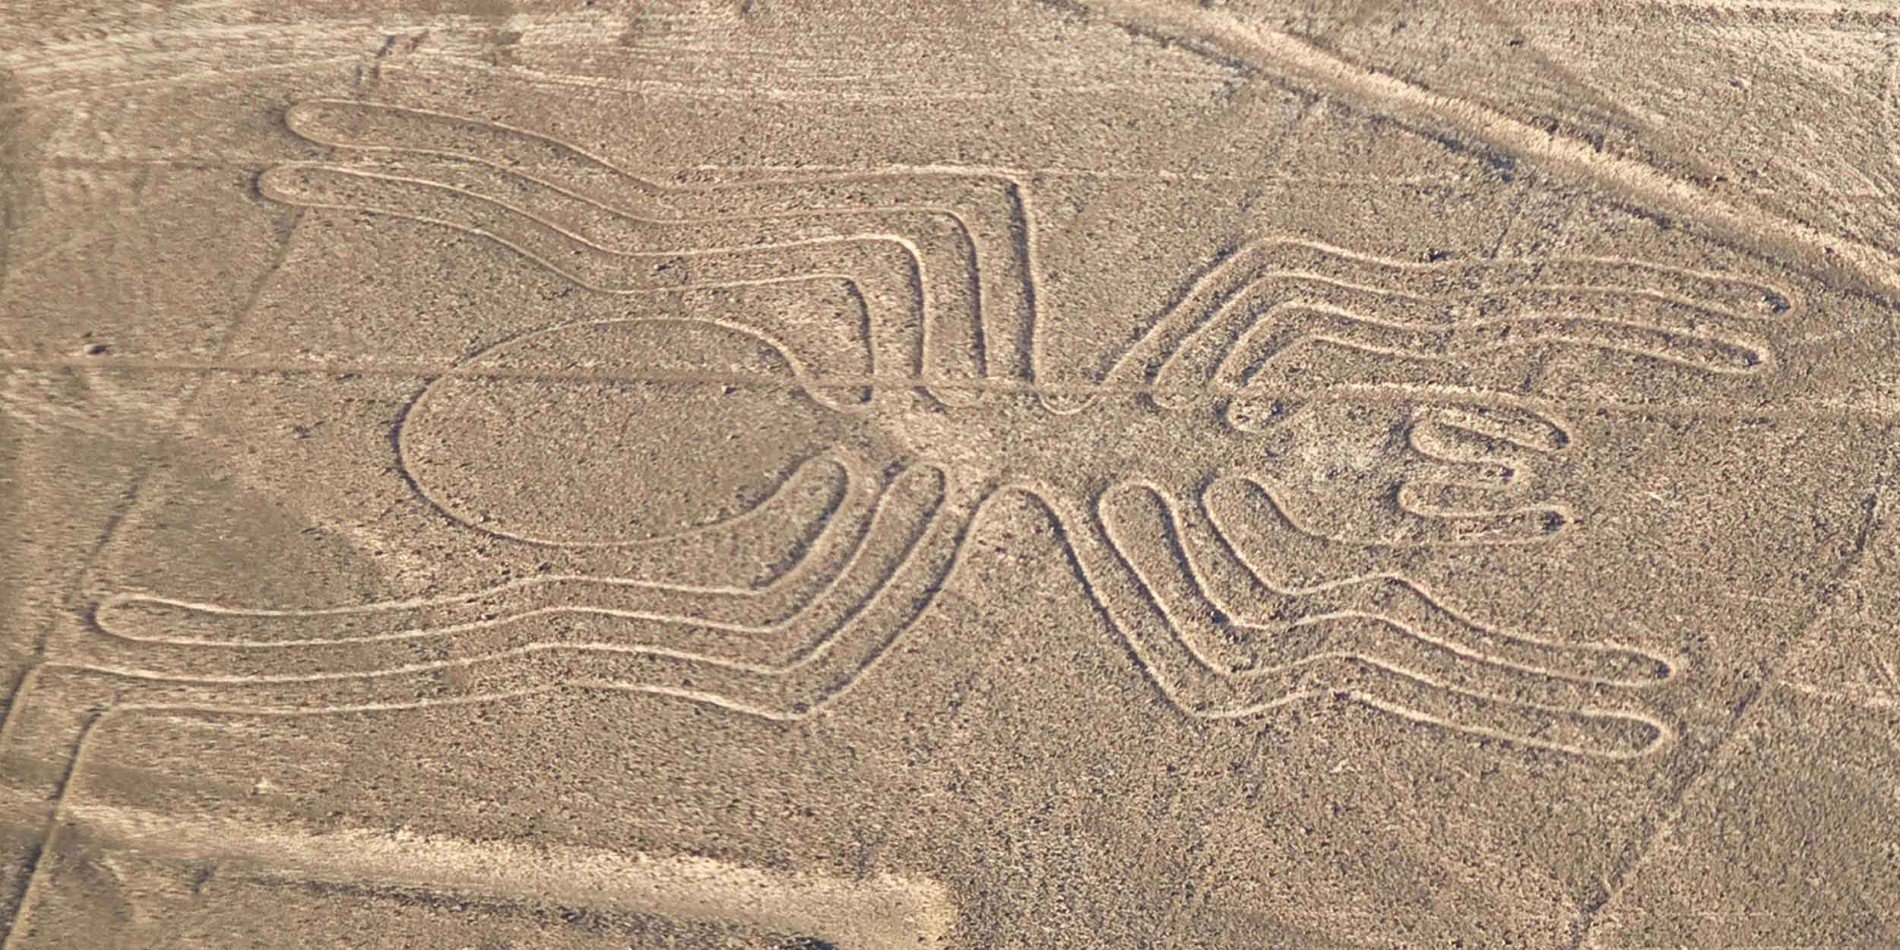 Spider geoglyph, Nazca lines, Peru